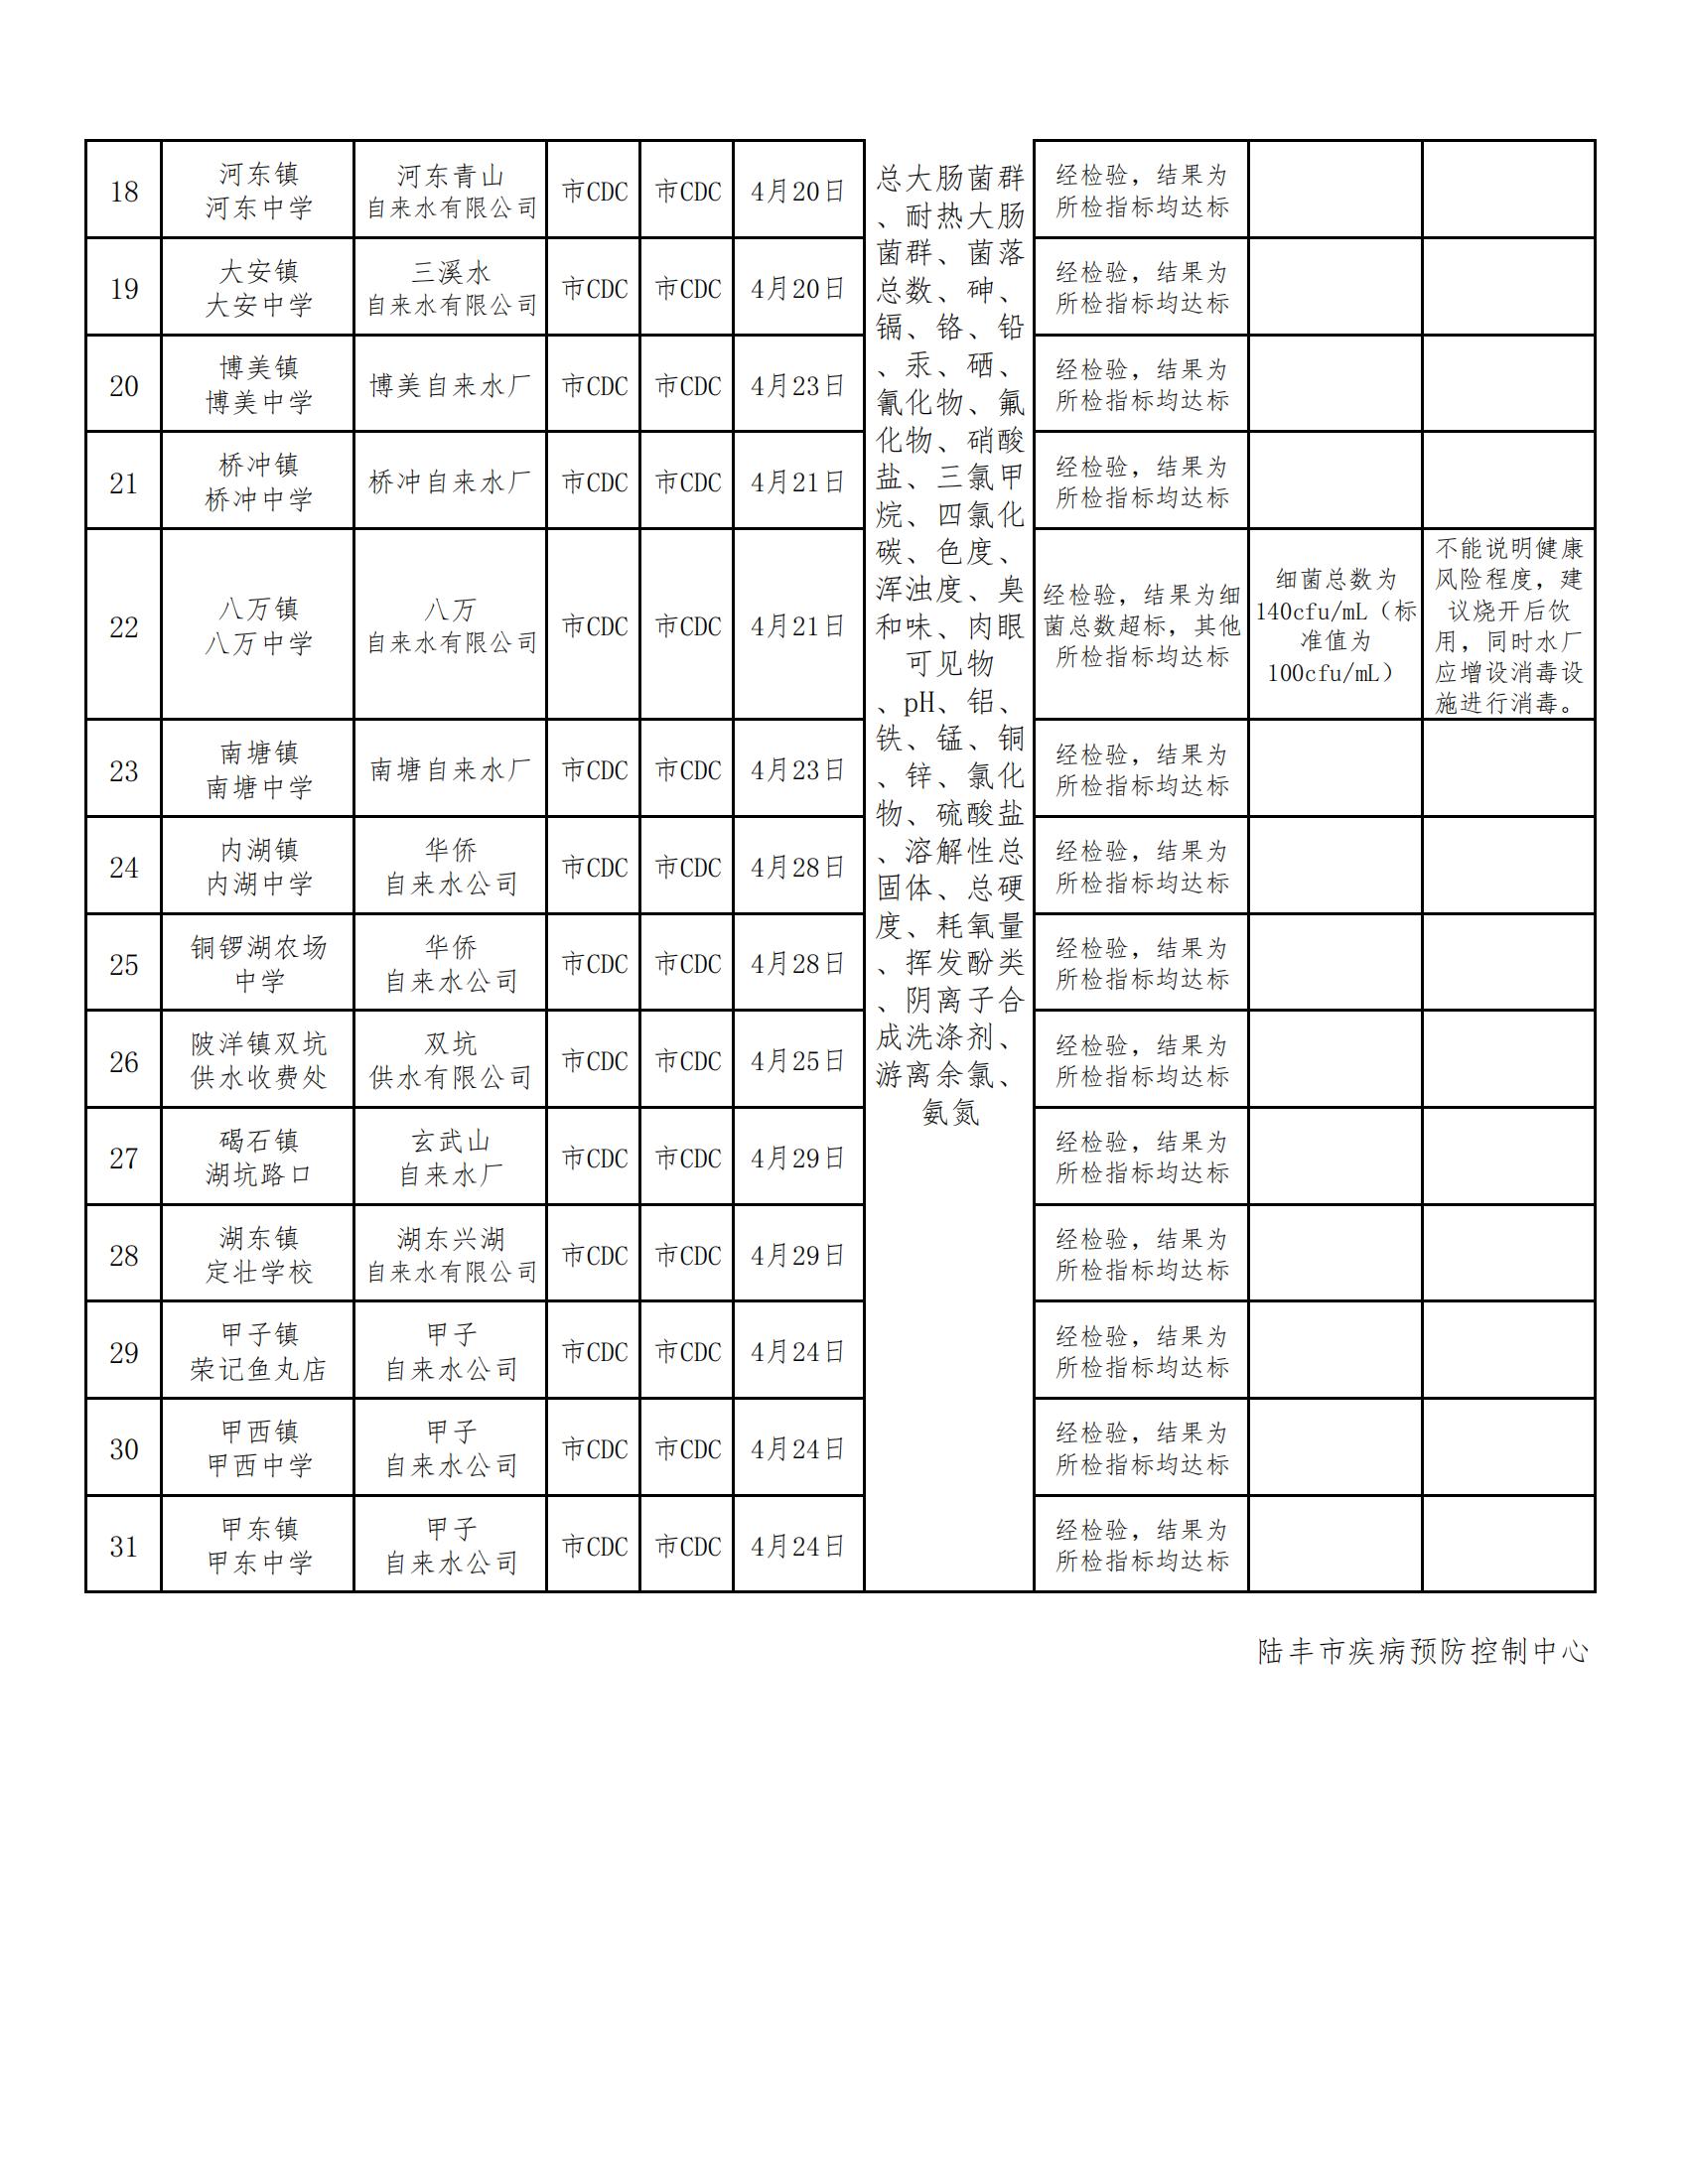 陆丰市用户水龙头水质监测信息公开表2022（第二季度）_01.jpg